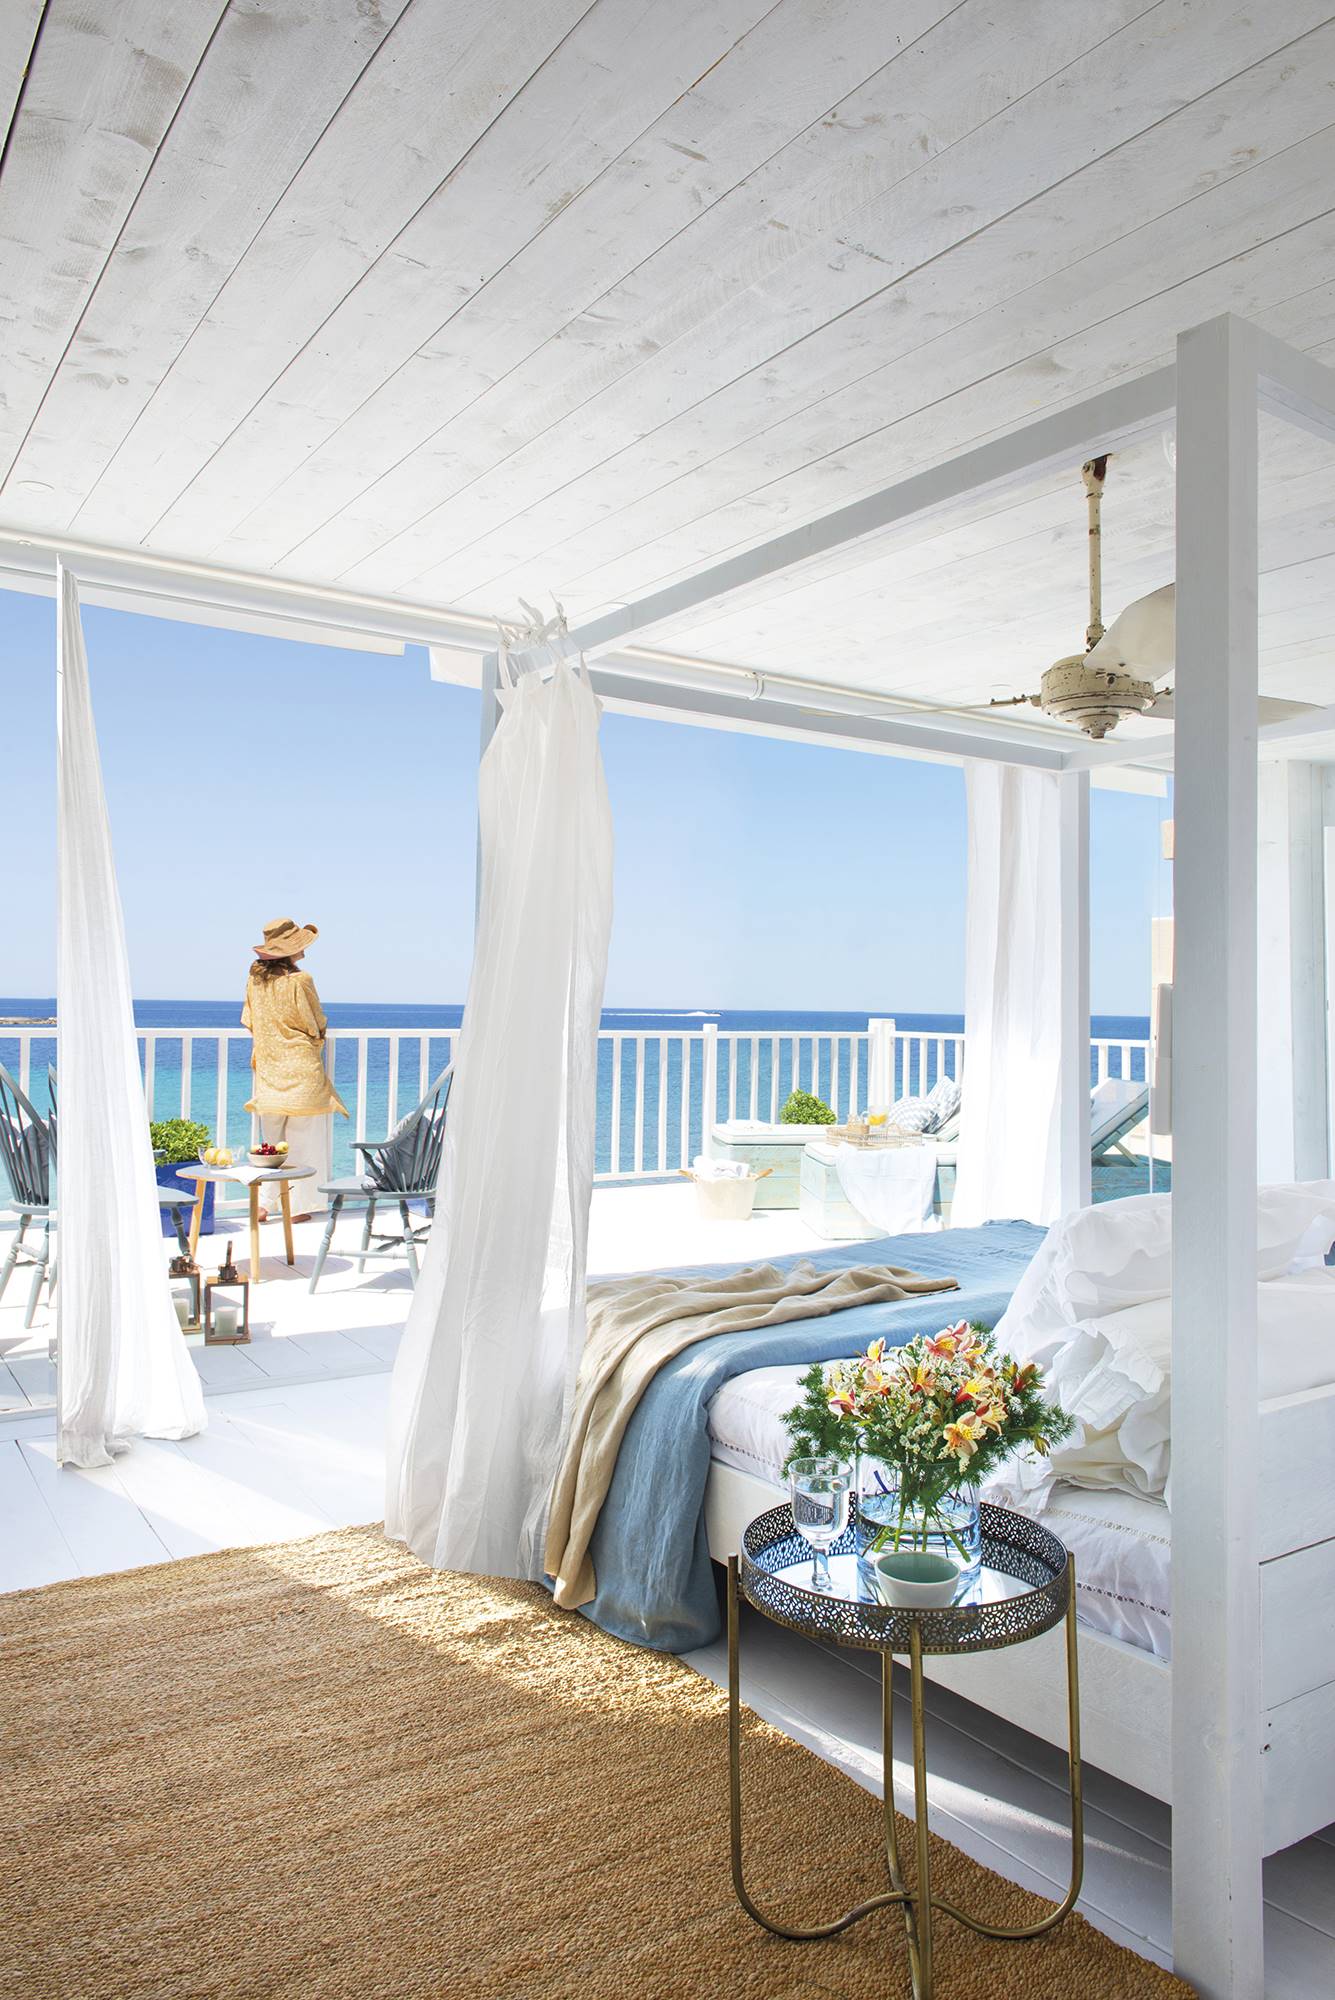 Dormitorio con terraza frente al mar, cama con dosel de madera blanca y ropa de cama en blanco y azul.